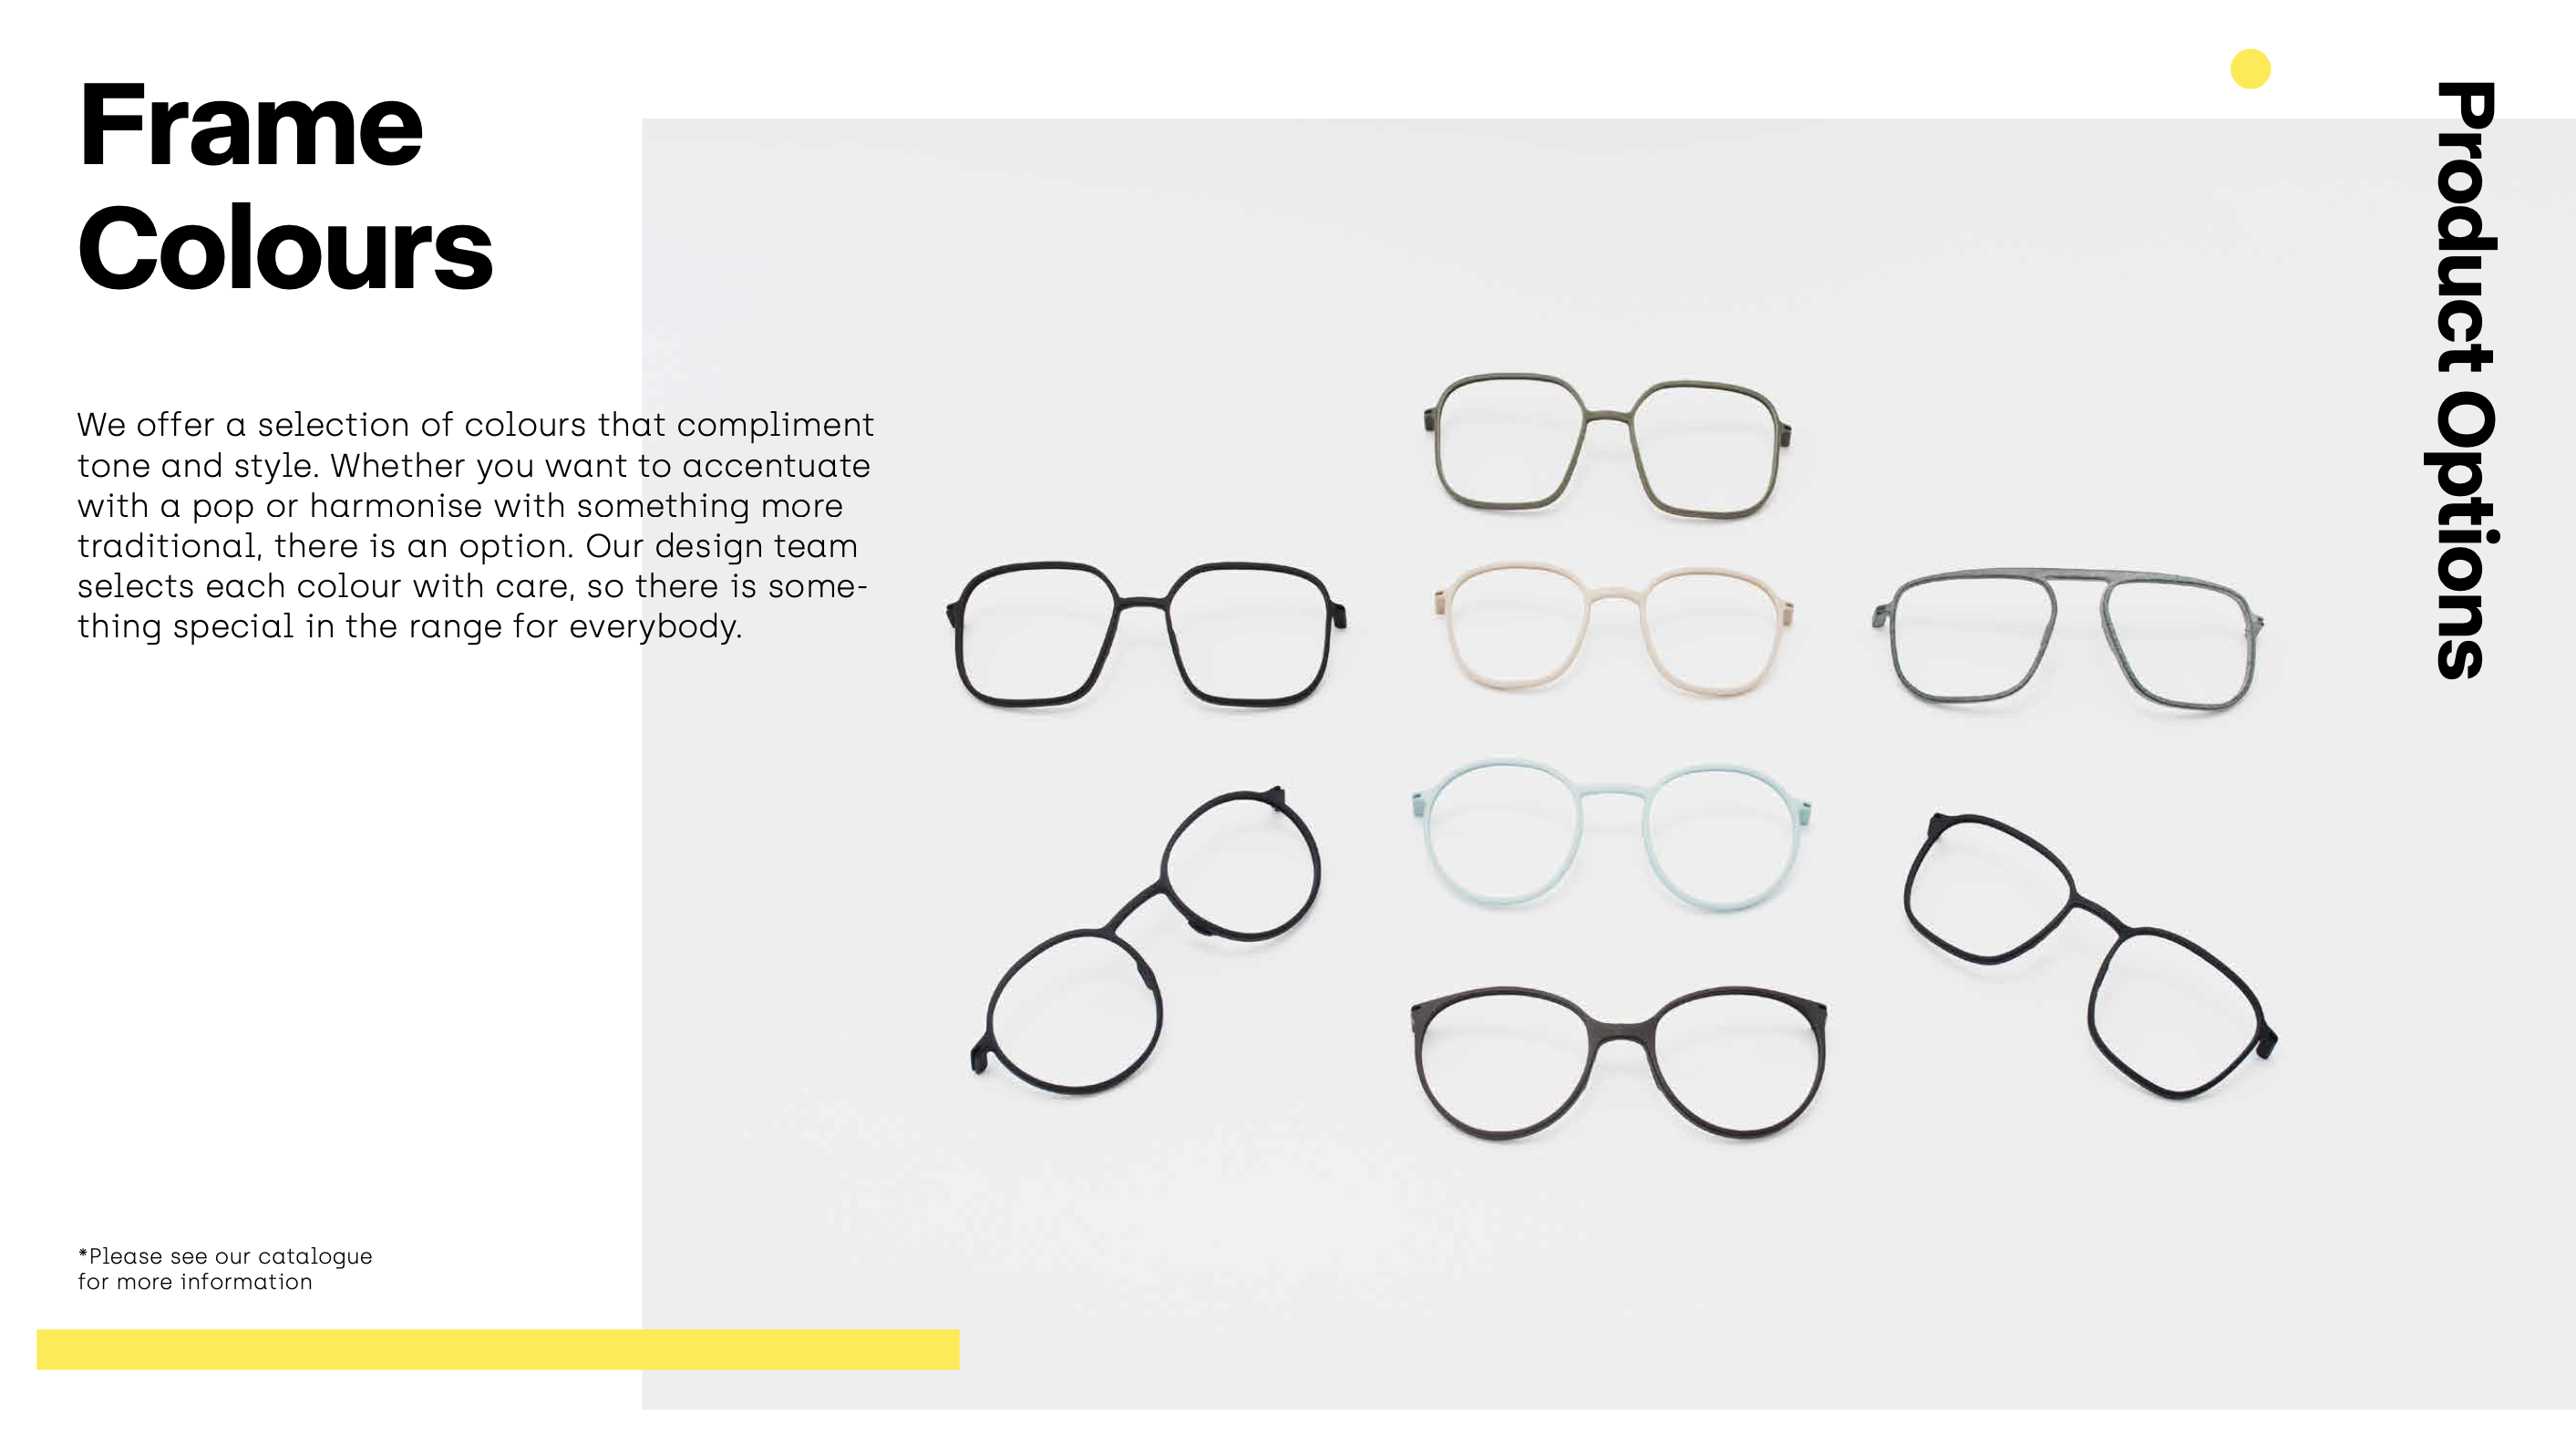 3D-gedruckte Brillengestelle in verschiedenen Farben der Nürnberger Marke weareannu.